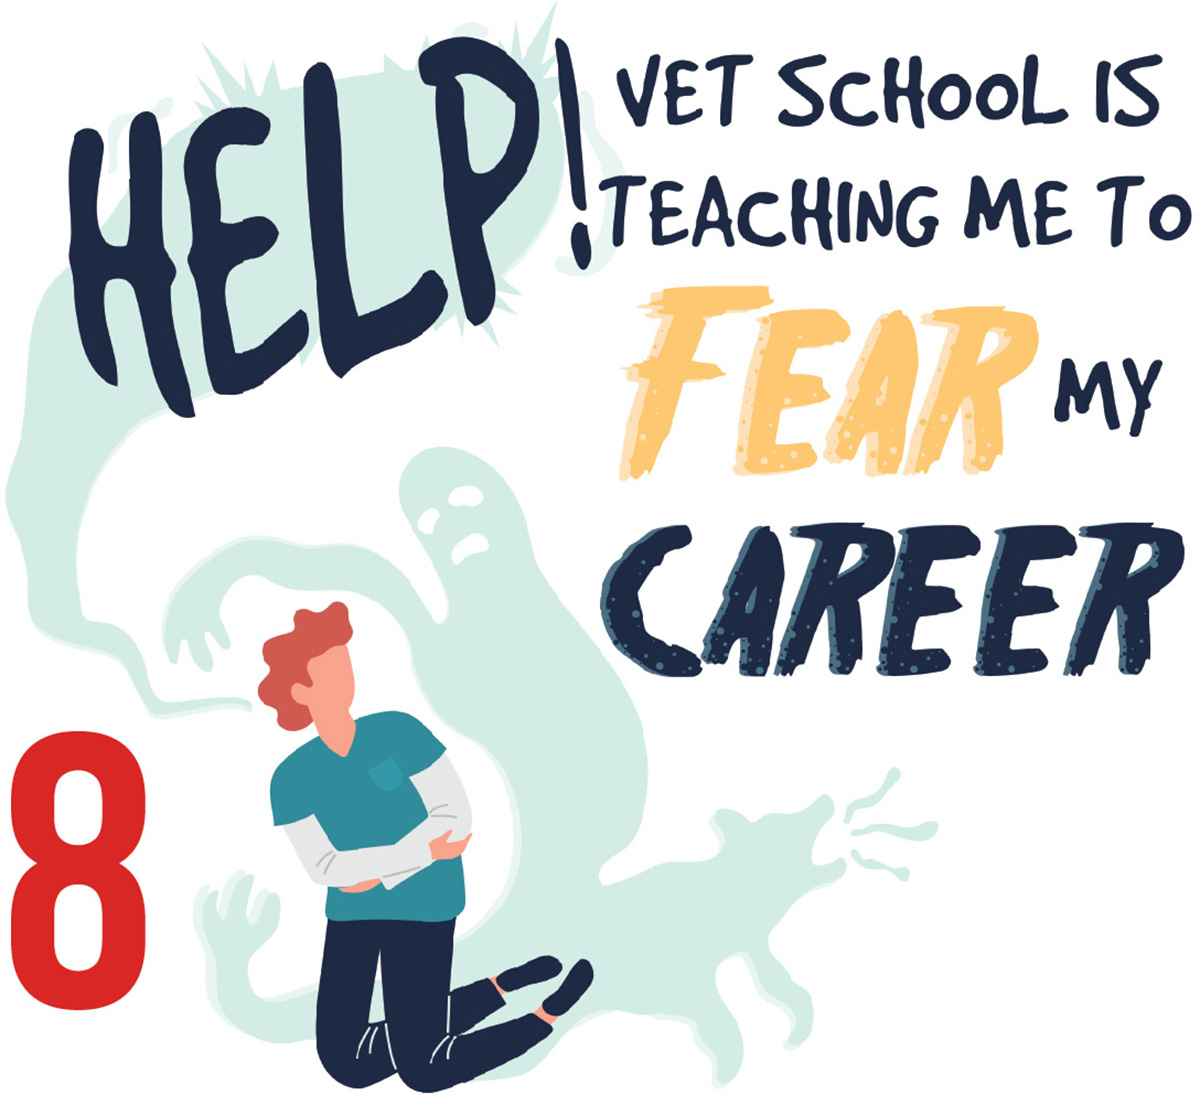 Help! Vet School is Teaching Me to Fear My Career!